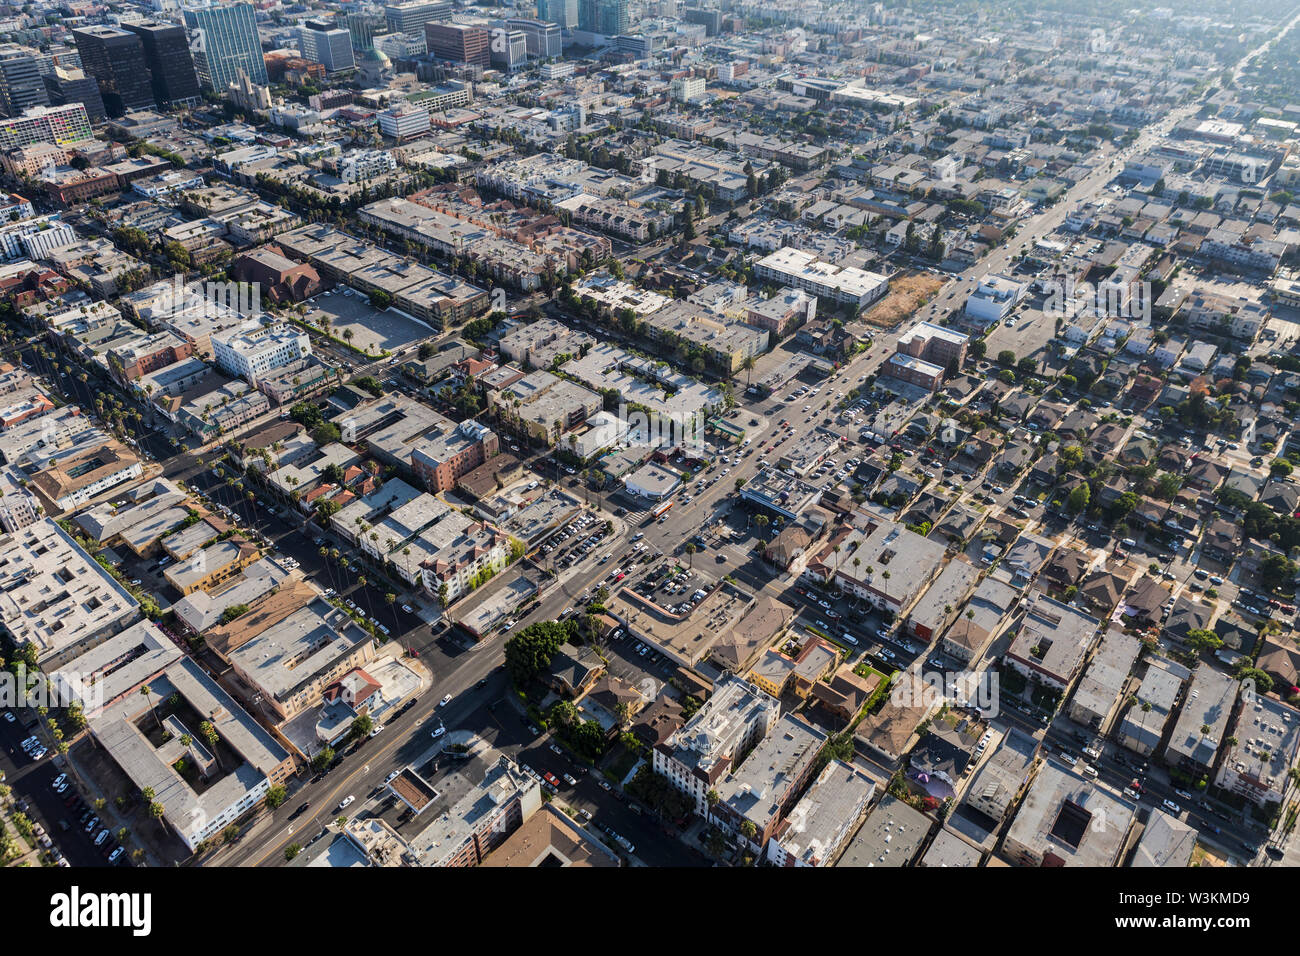 Vista aerea di edifici urbani, appartamenti e case lungo la terza strada ad ovest del centro cittadino di Los Angeles in California. Foto Stock